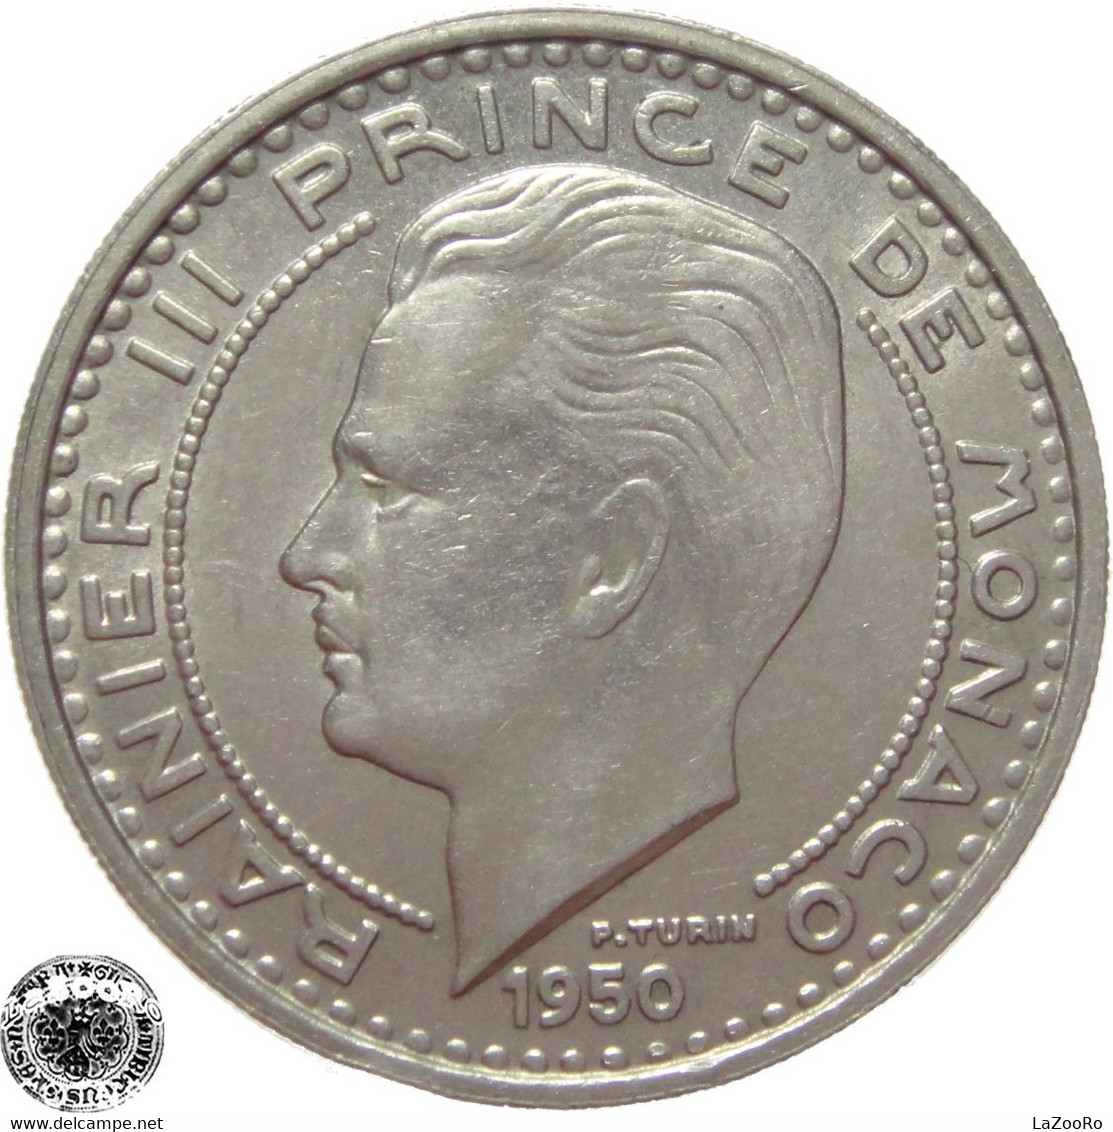 LaZooRo: Monaco 100 Francs 1950 XF / UNC - 1949-1956 Old Francs